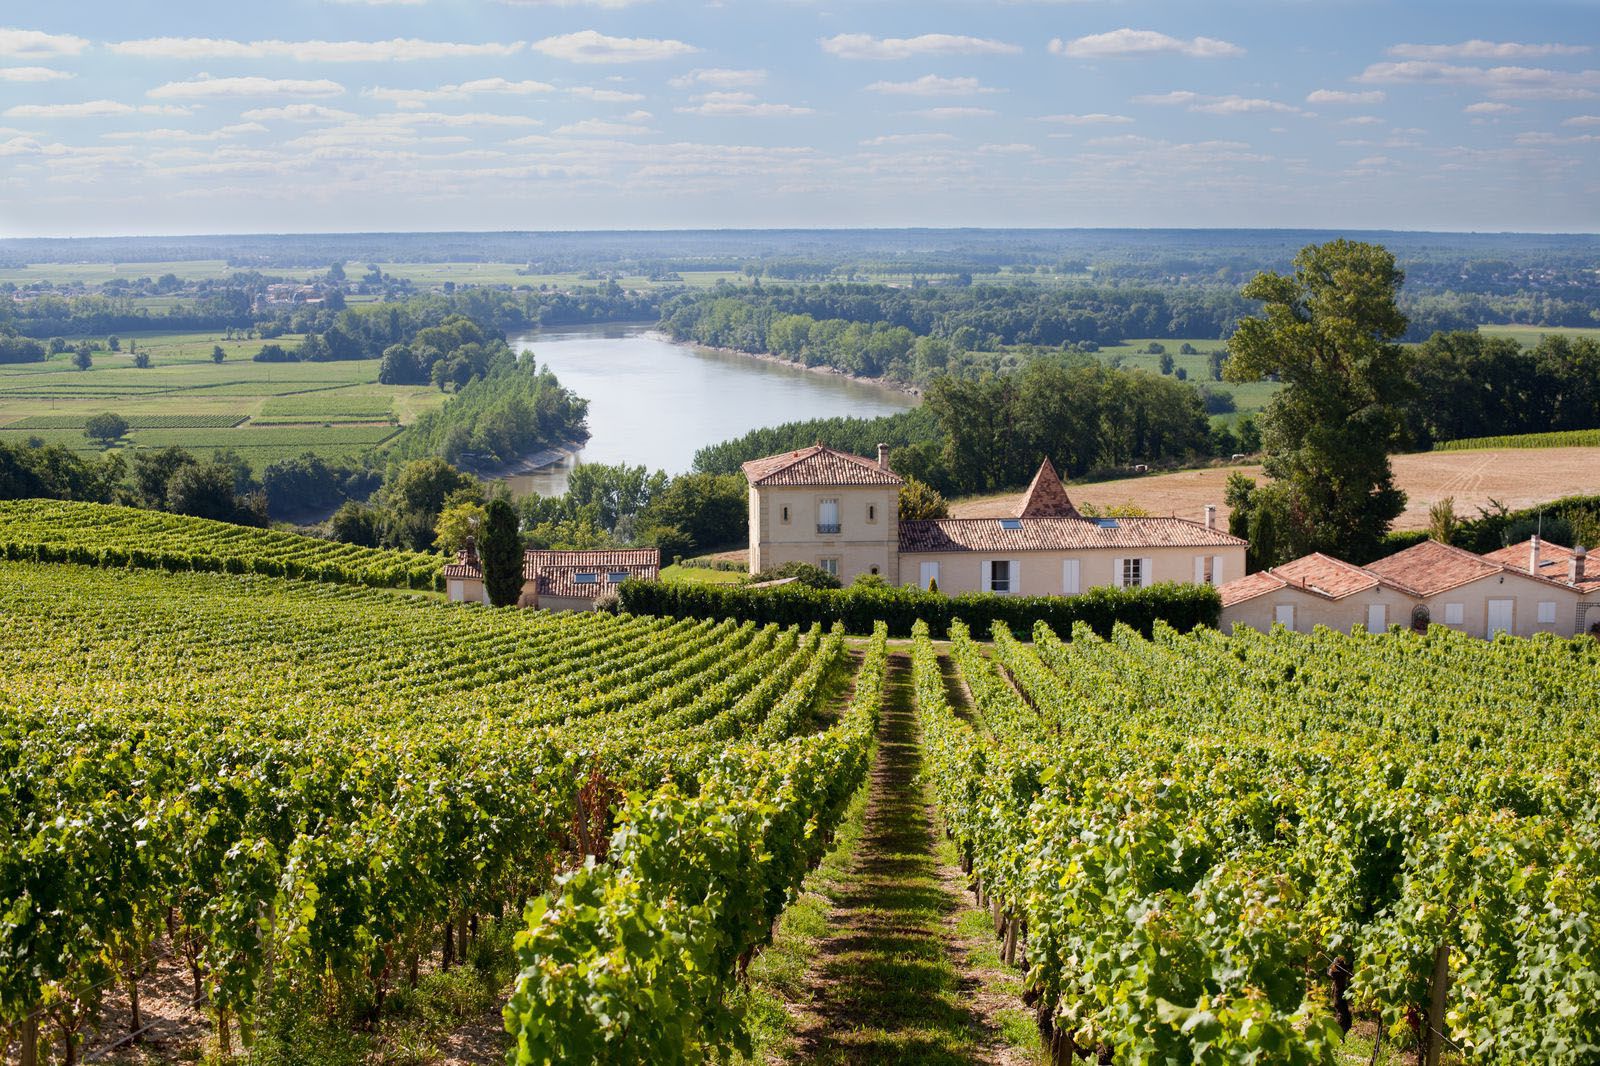 How Château Biac has become a rising star of Côtes de Bordeaux